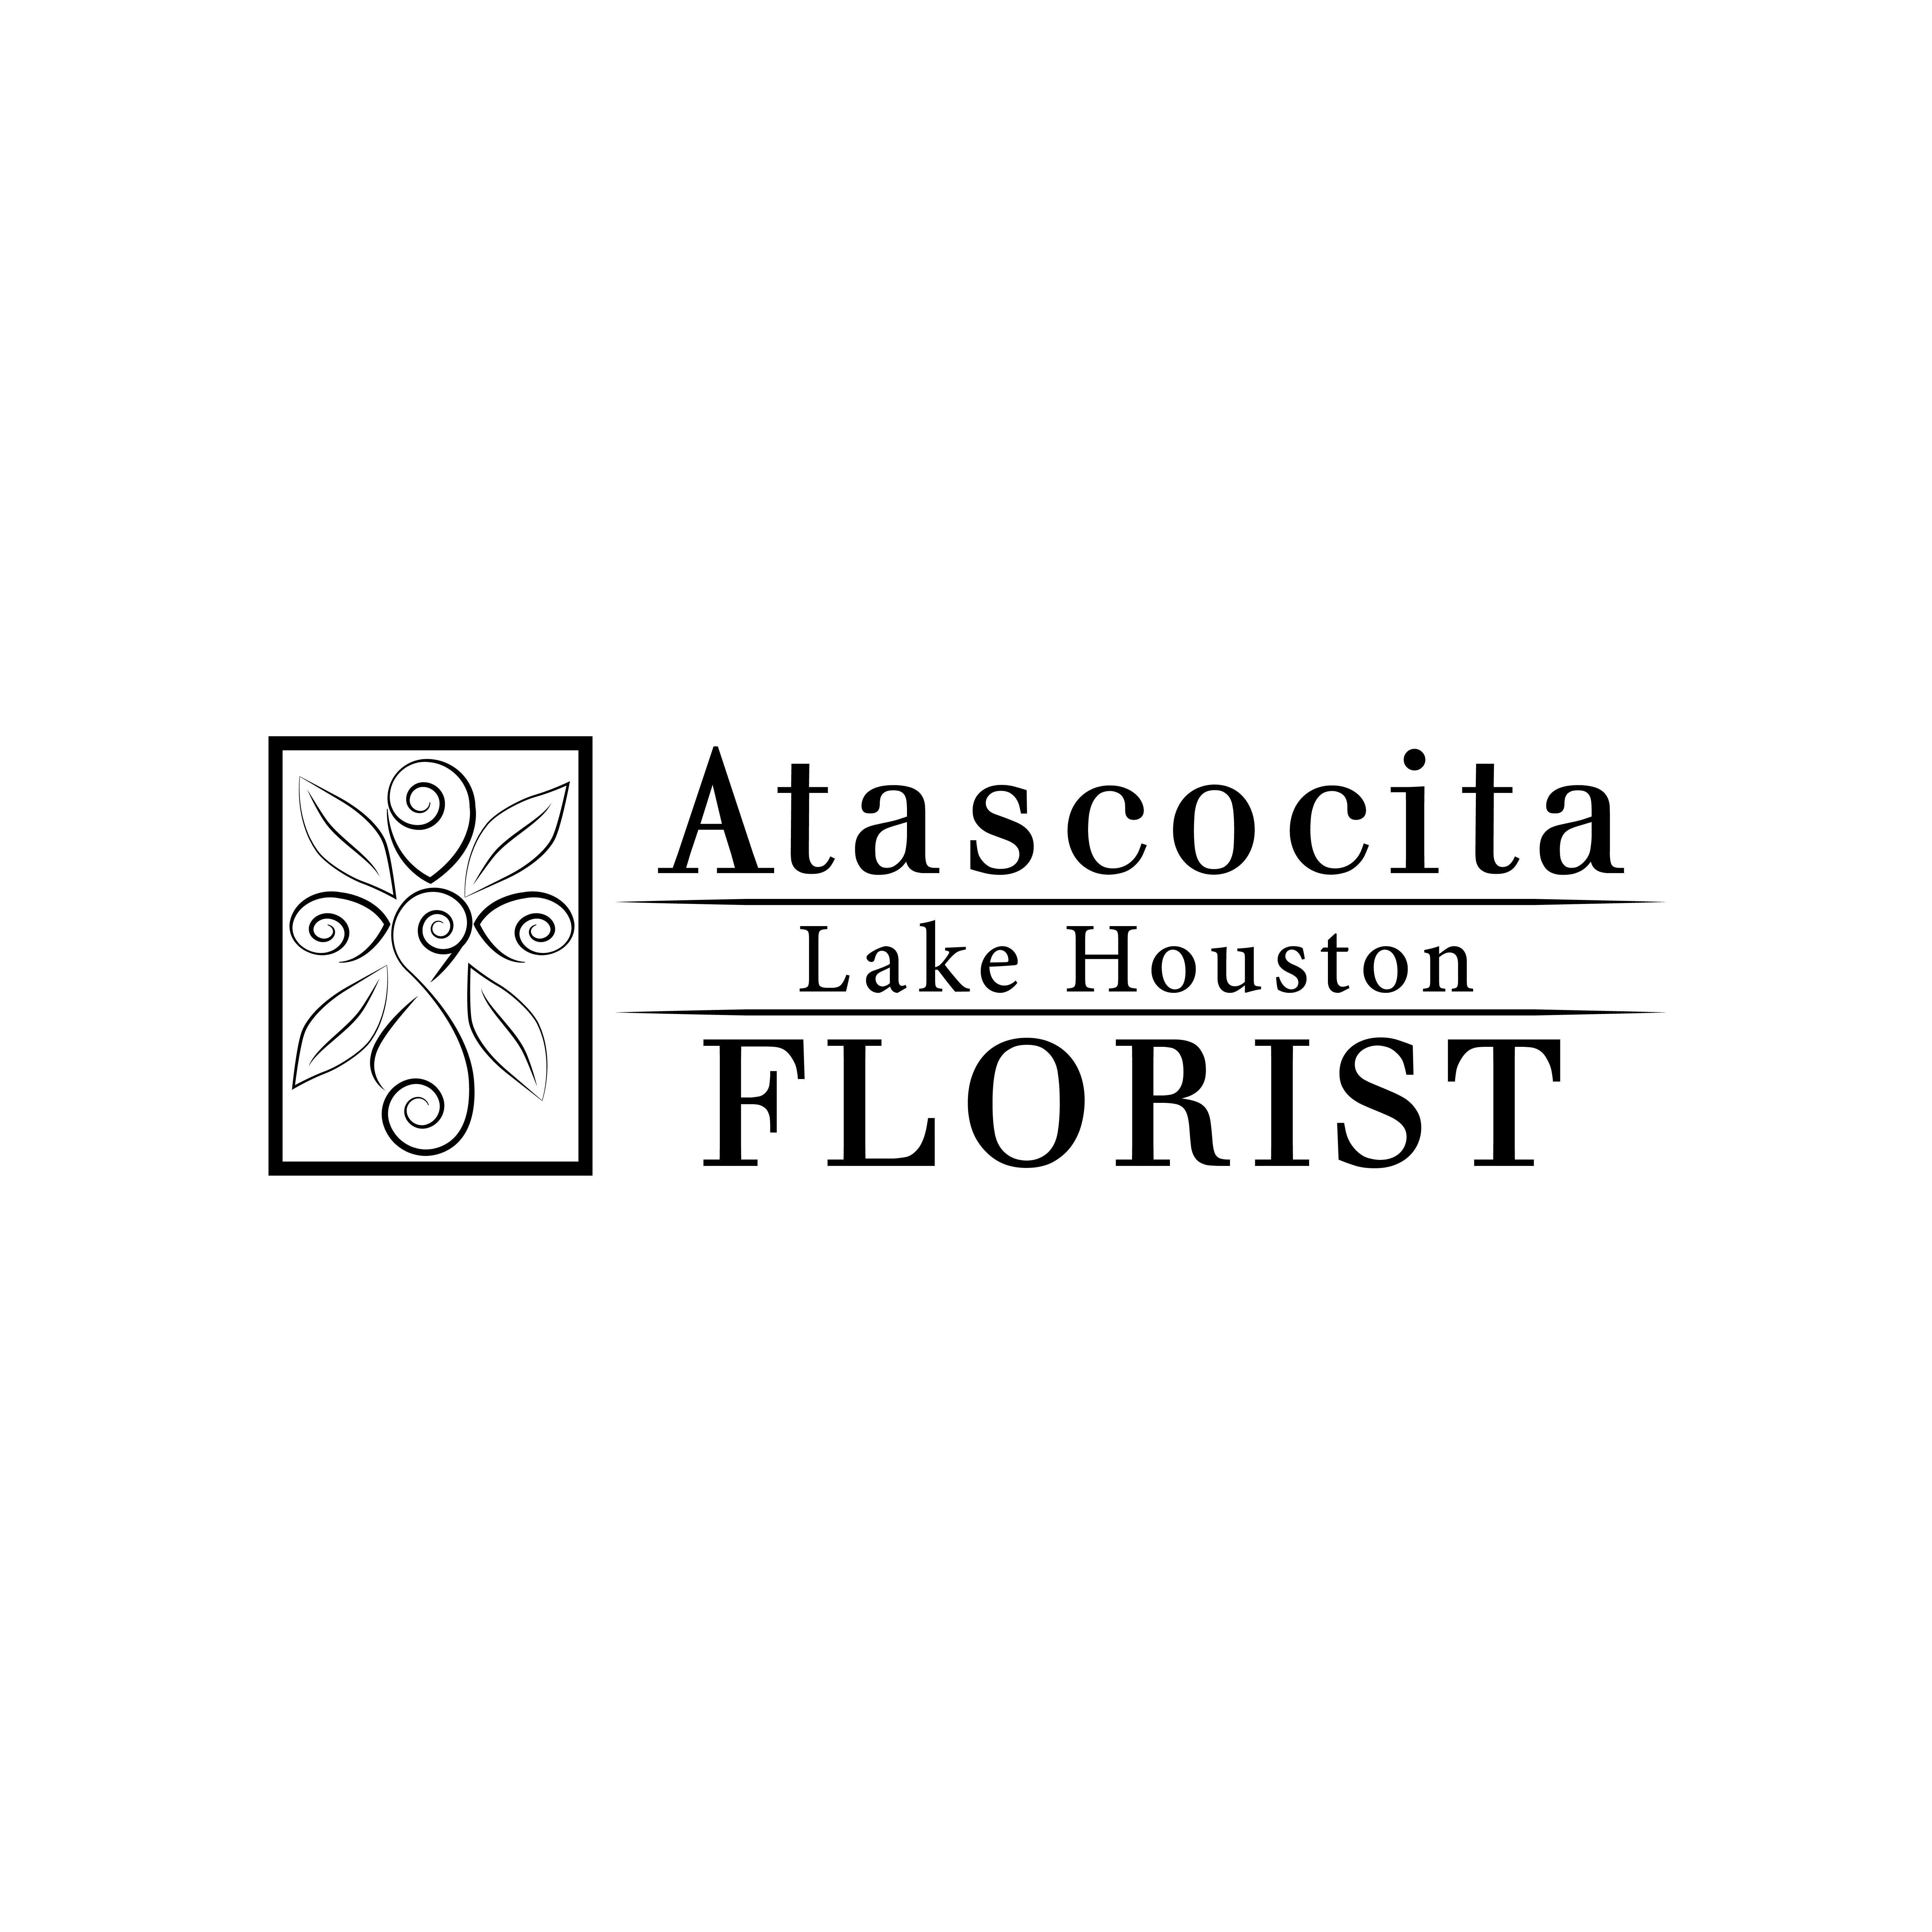 Atascocita Lake Houston Florist